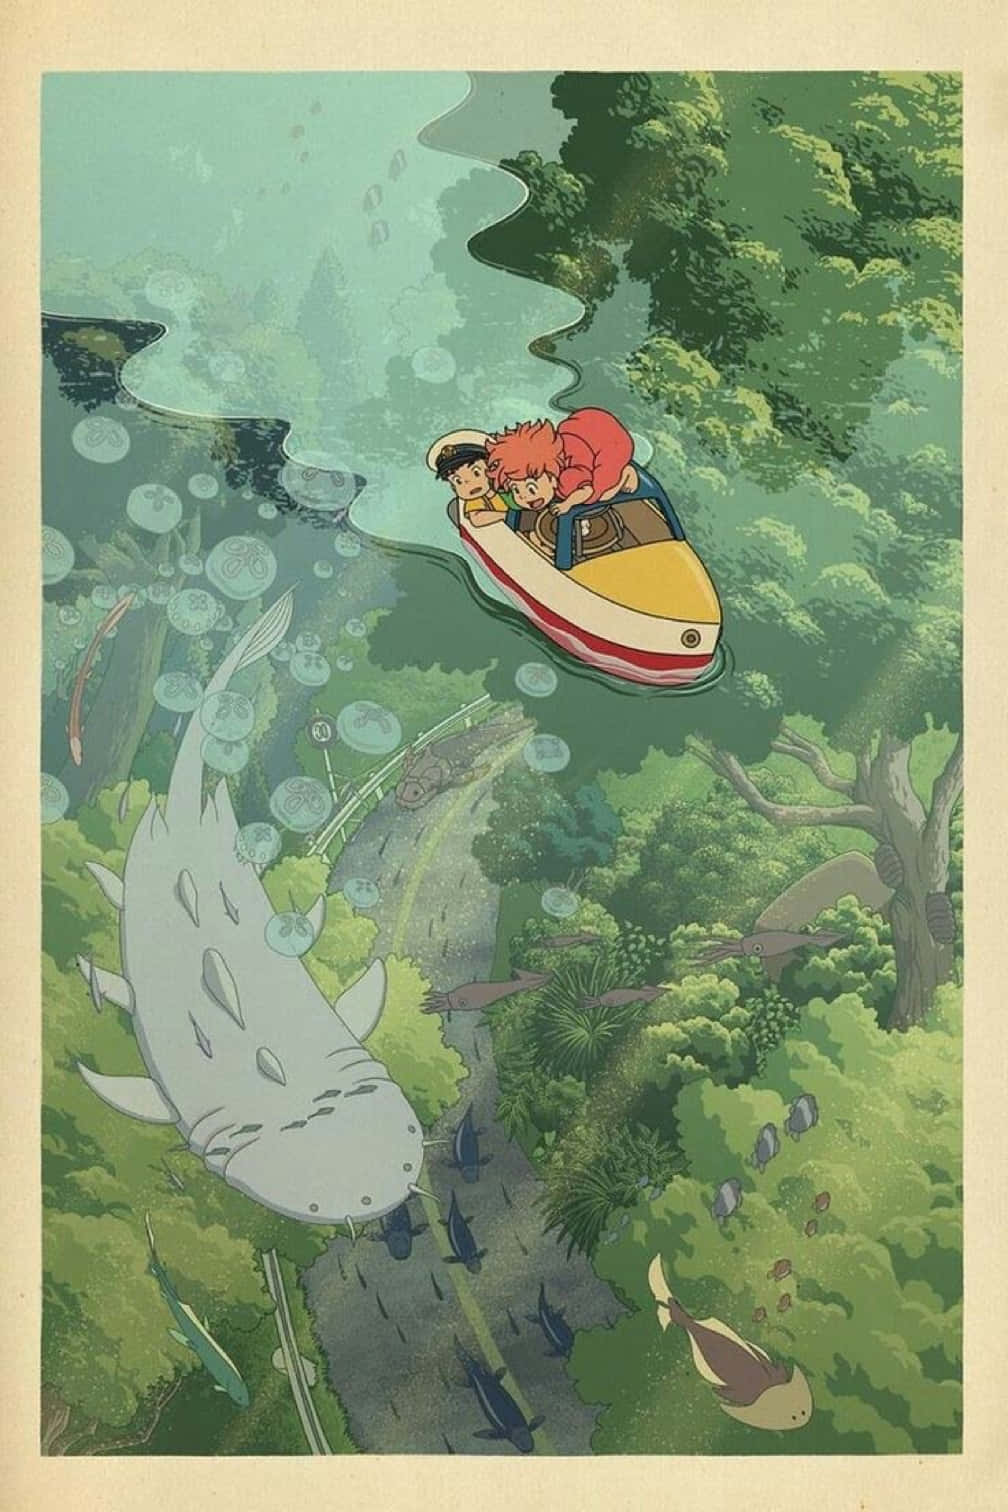 Enchanting Studio Ghibli Art Showcasing Nature and Adventure Wallpaper